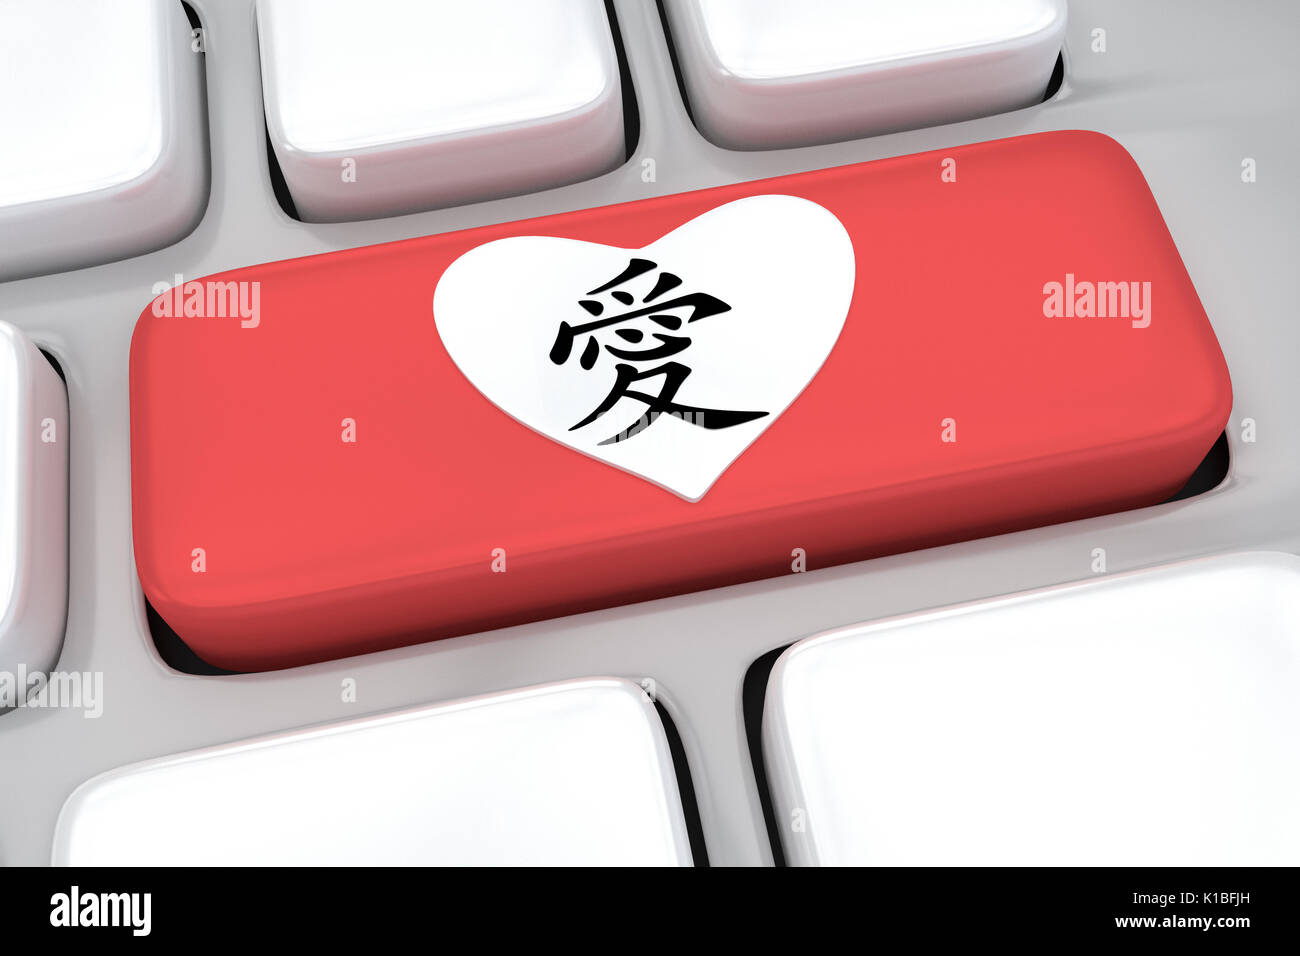 Rendre illustration de clavier de l'ordinateur avec mot chinois pour l'amour sur un bouton rouge Banque D'Images